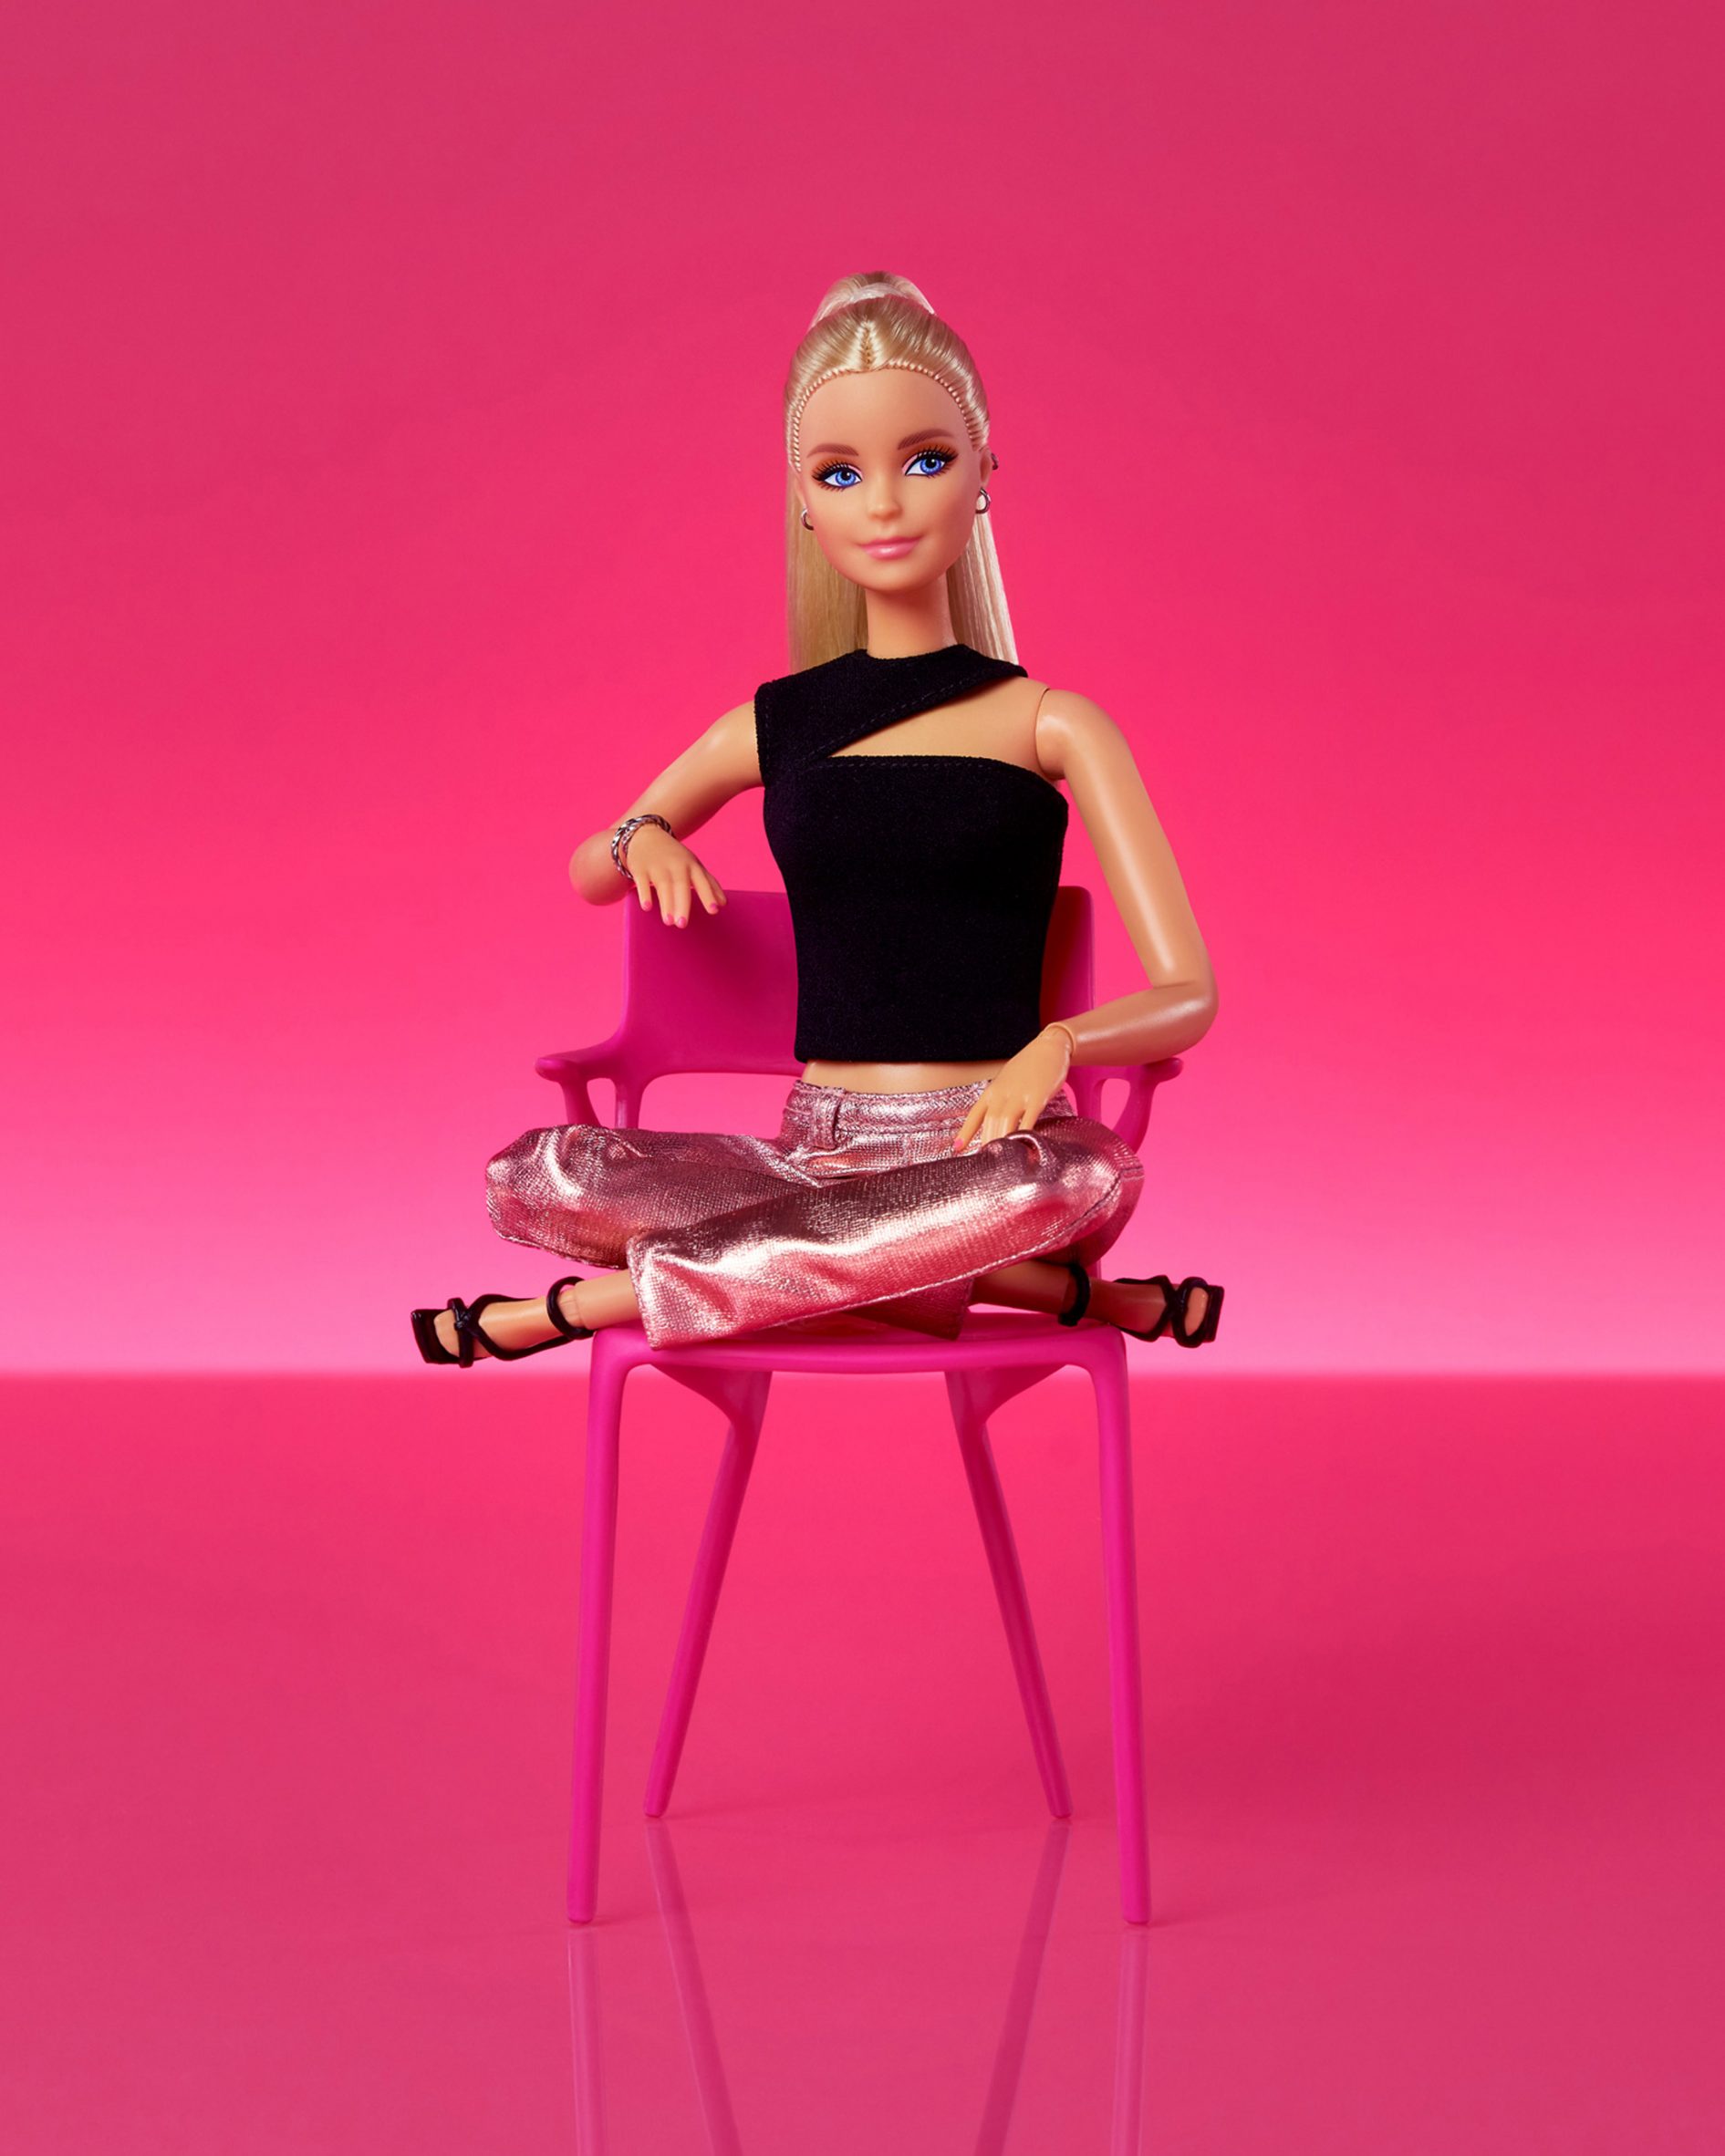 Barbie-sized AI chair